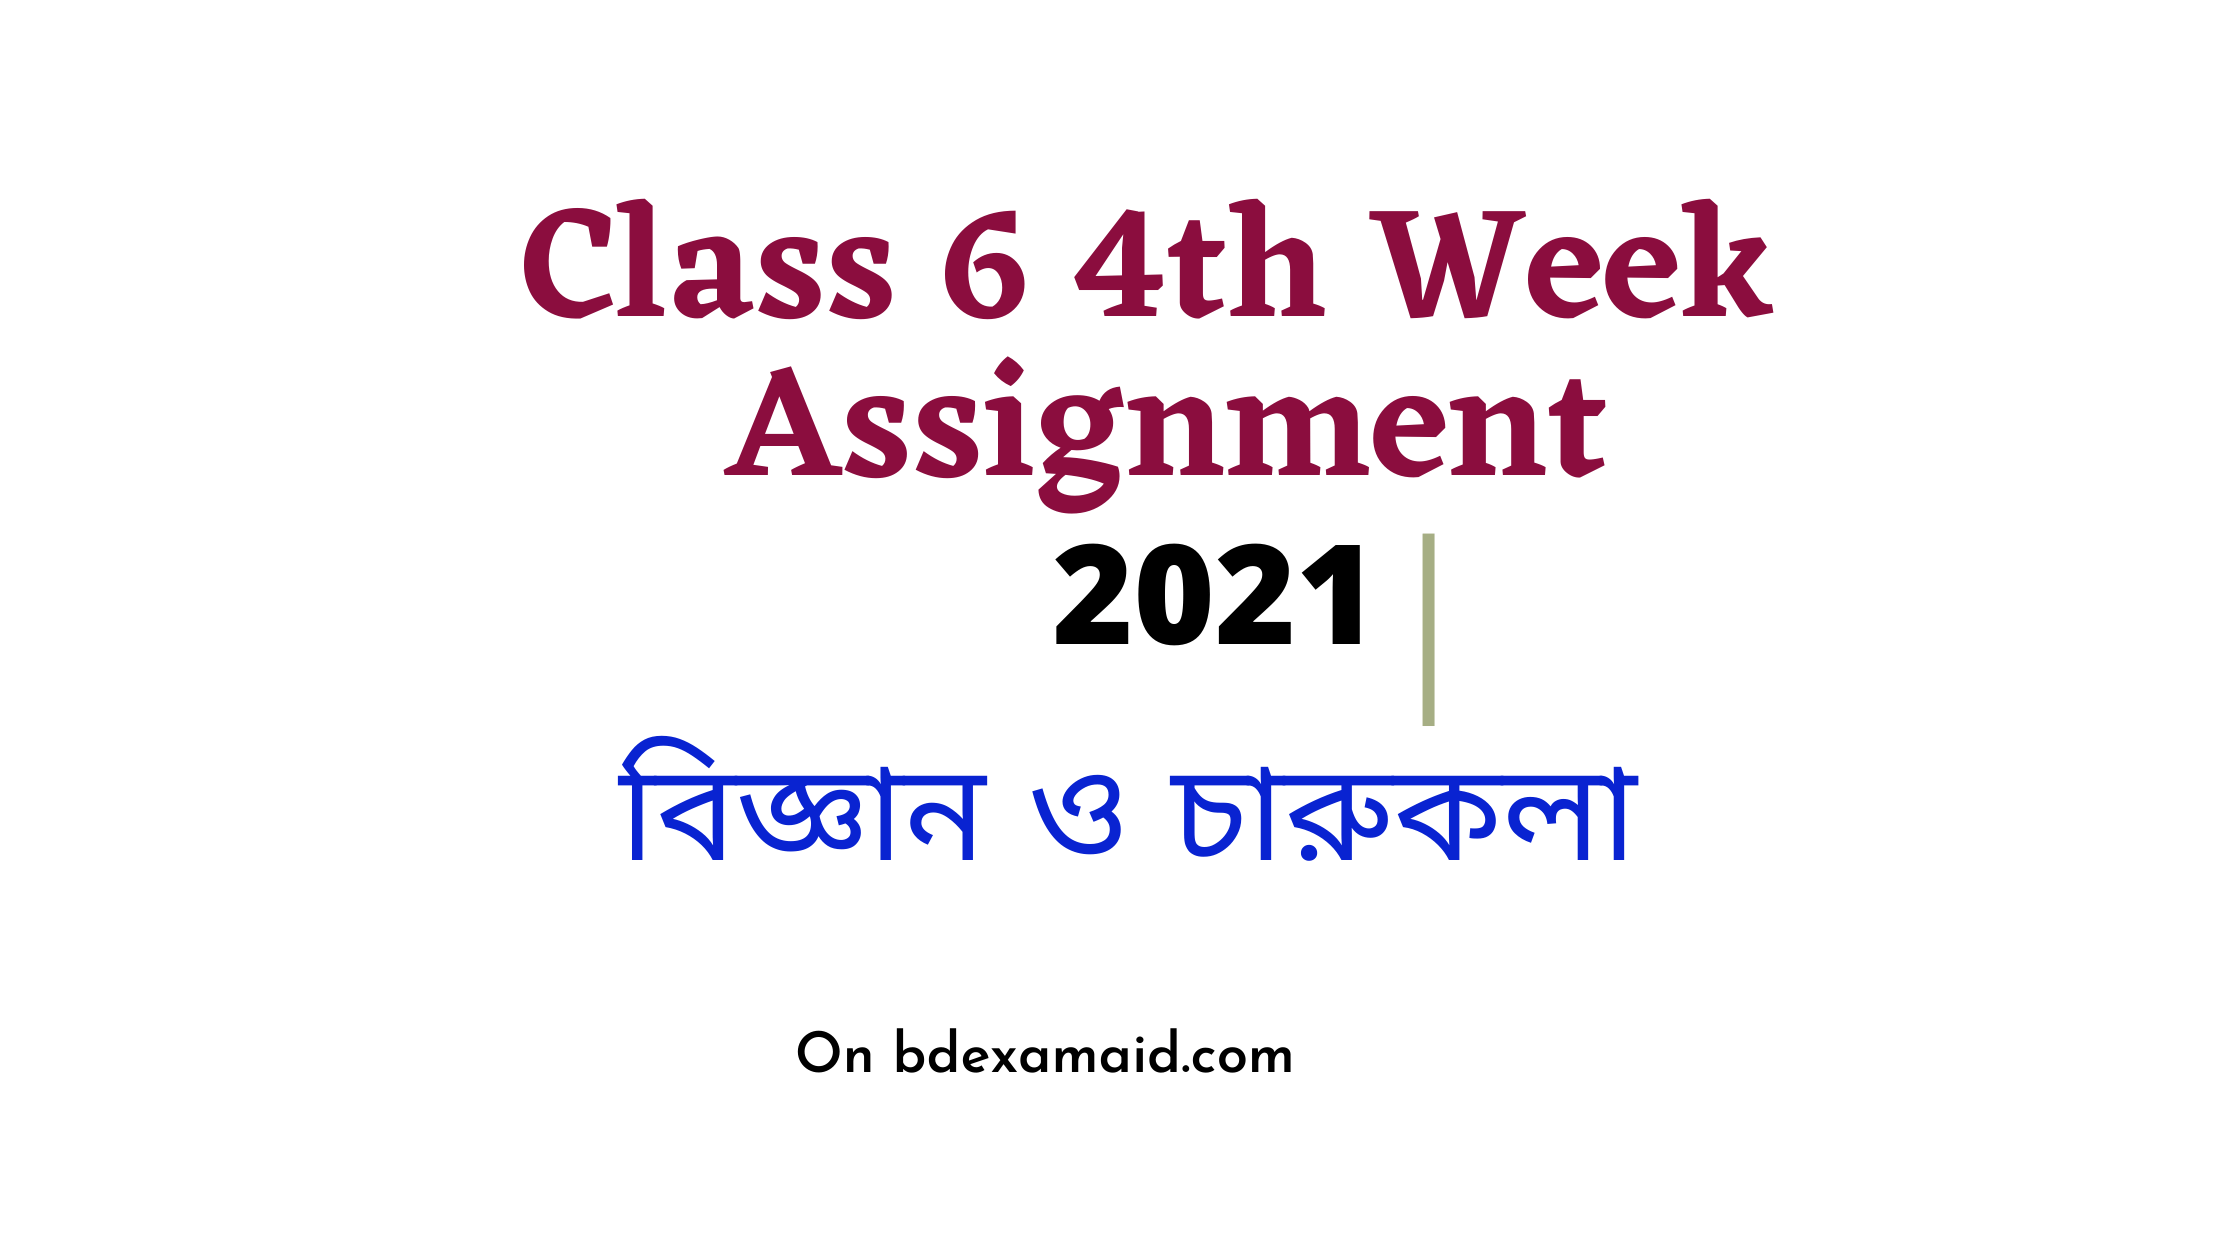 class 6 assignment 4th week 2021